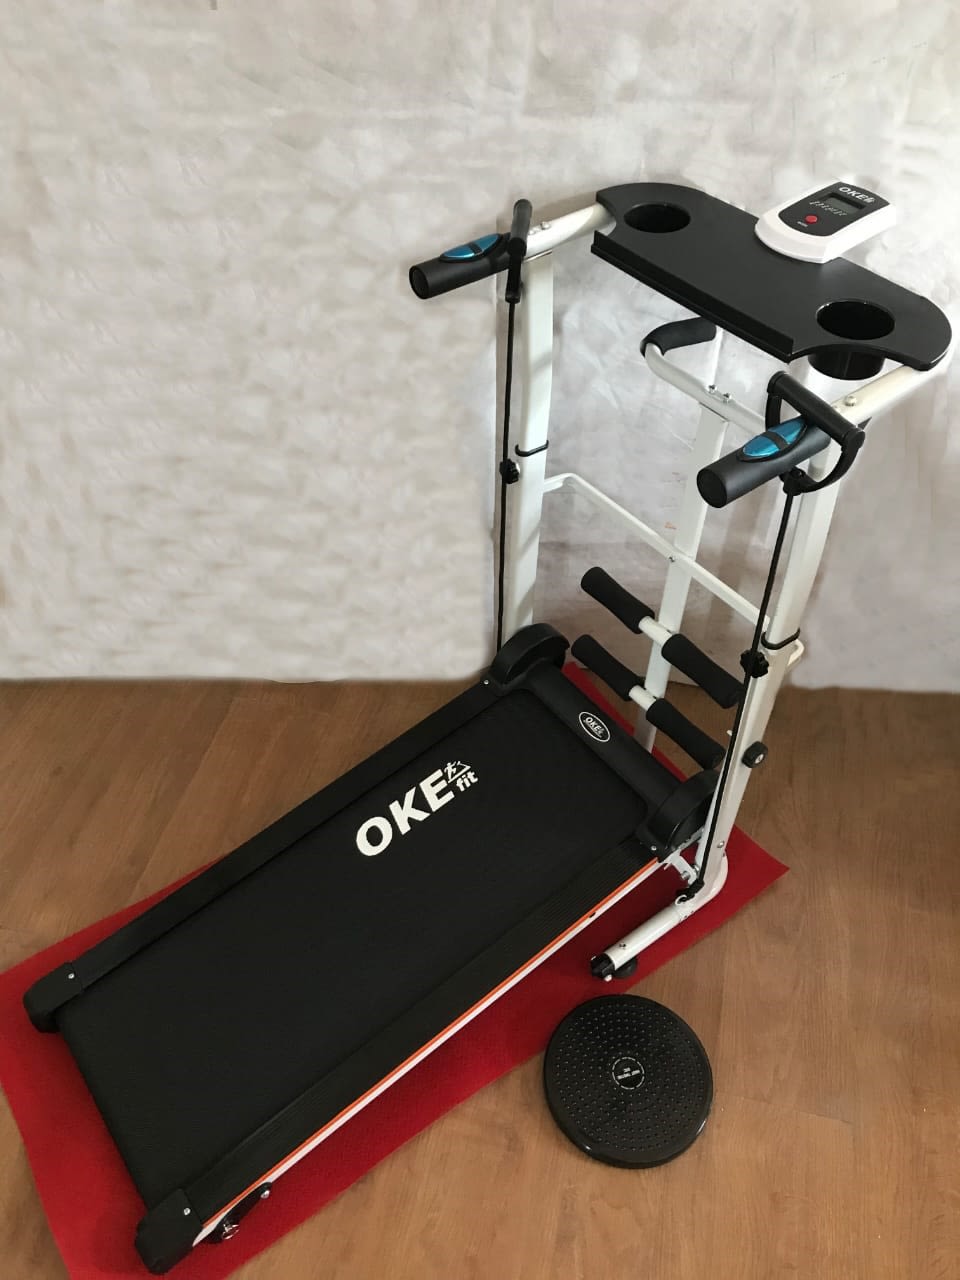 Okefit Manual Treadmill RL 008